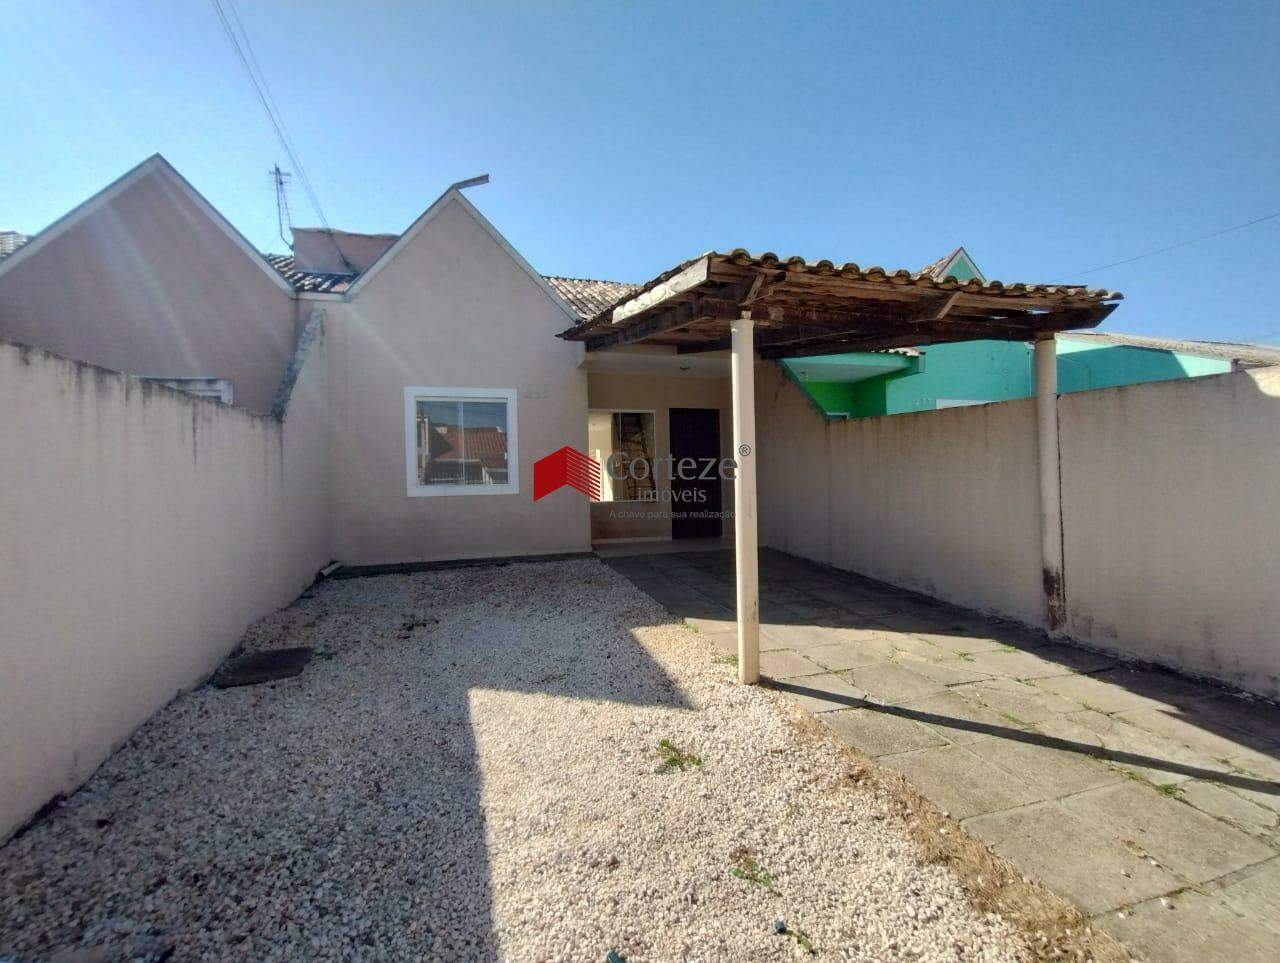 Casa à venda de 3 quartos com amplo quintal, localizado no bairro Campo Largo da Roseira.